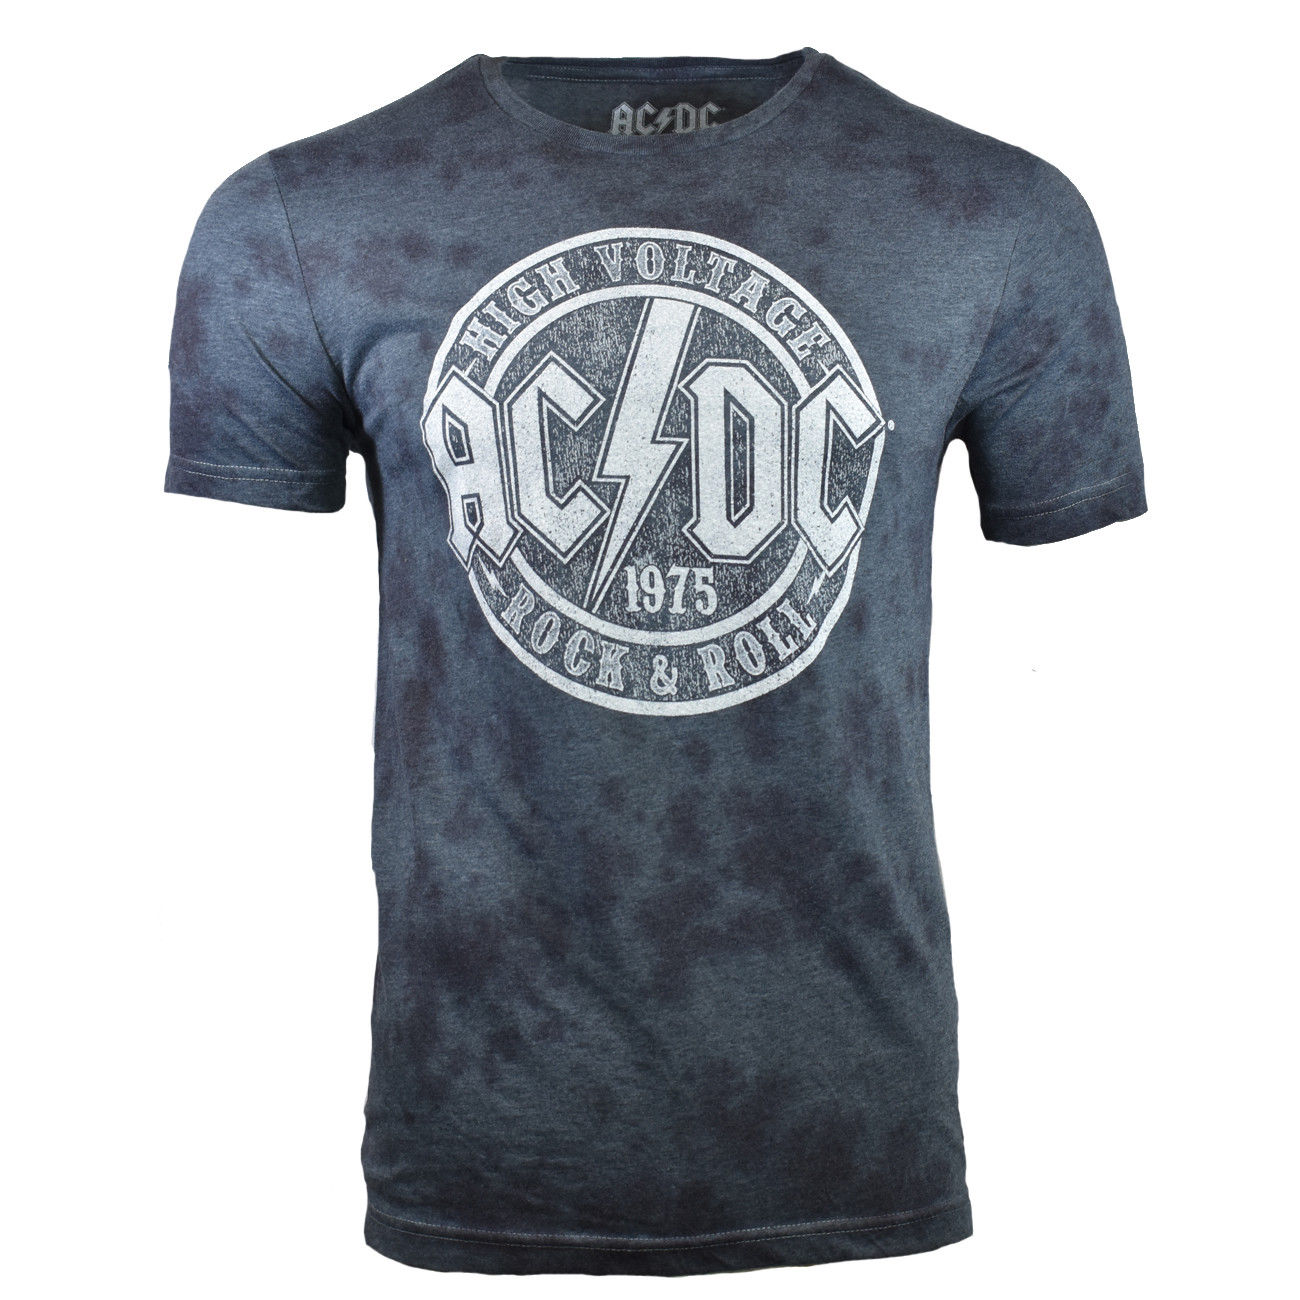 AC/DC Men's T-Shirt ROCK ROLL Band Back Vintage Graphic 1975 Tour